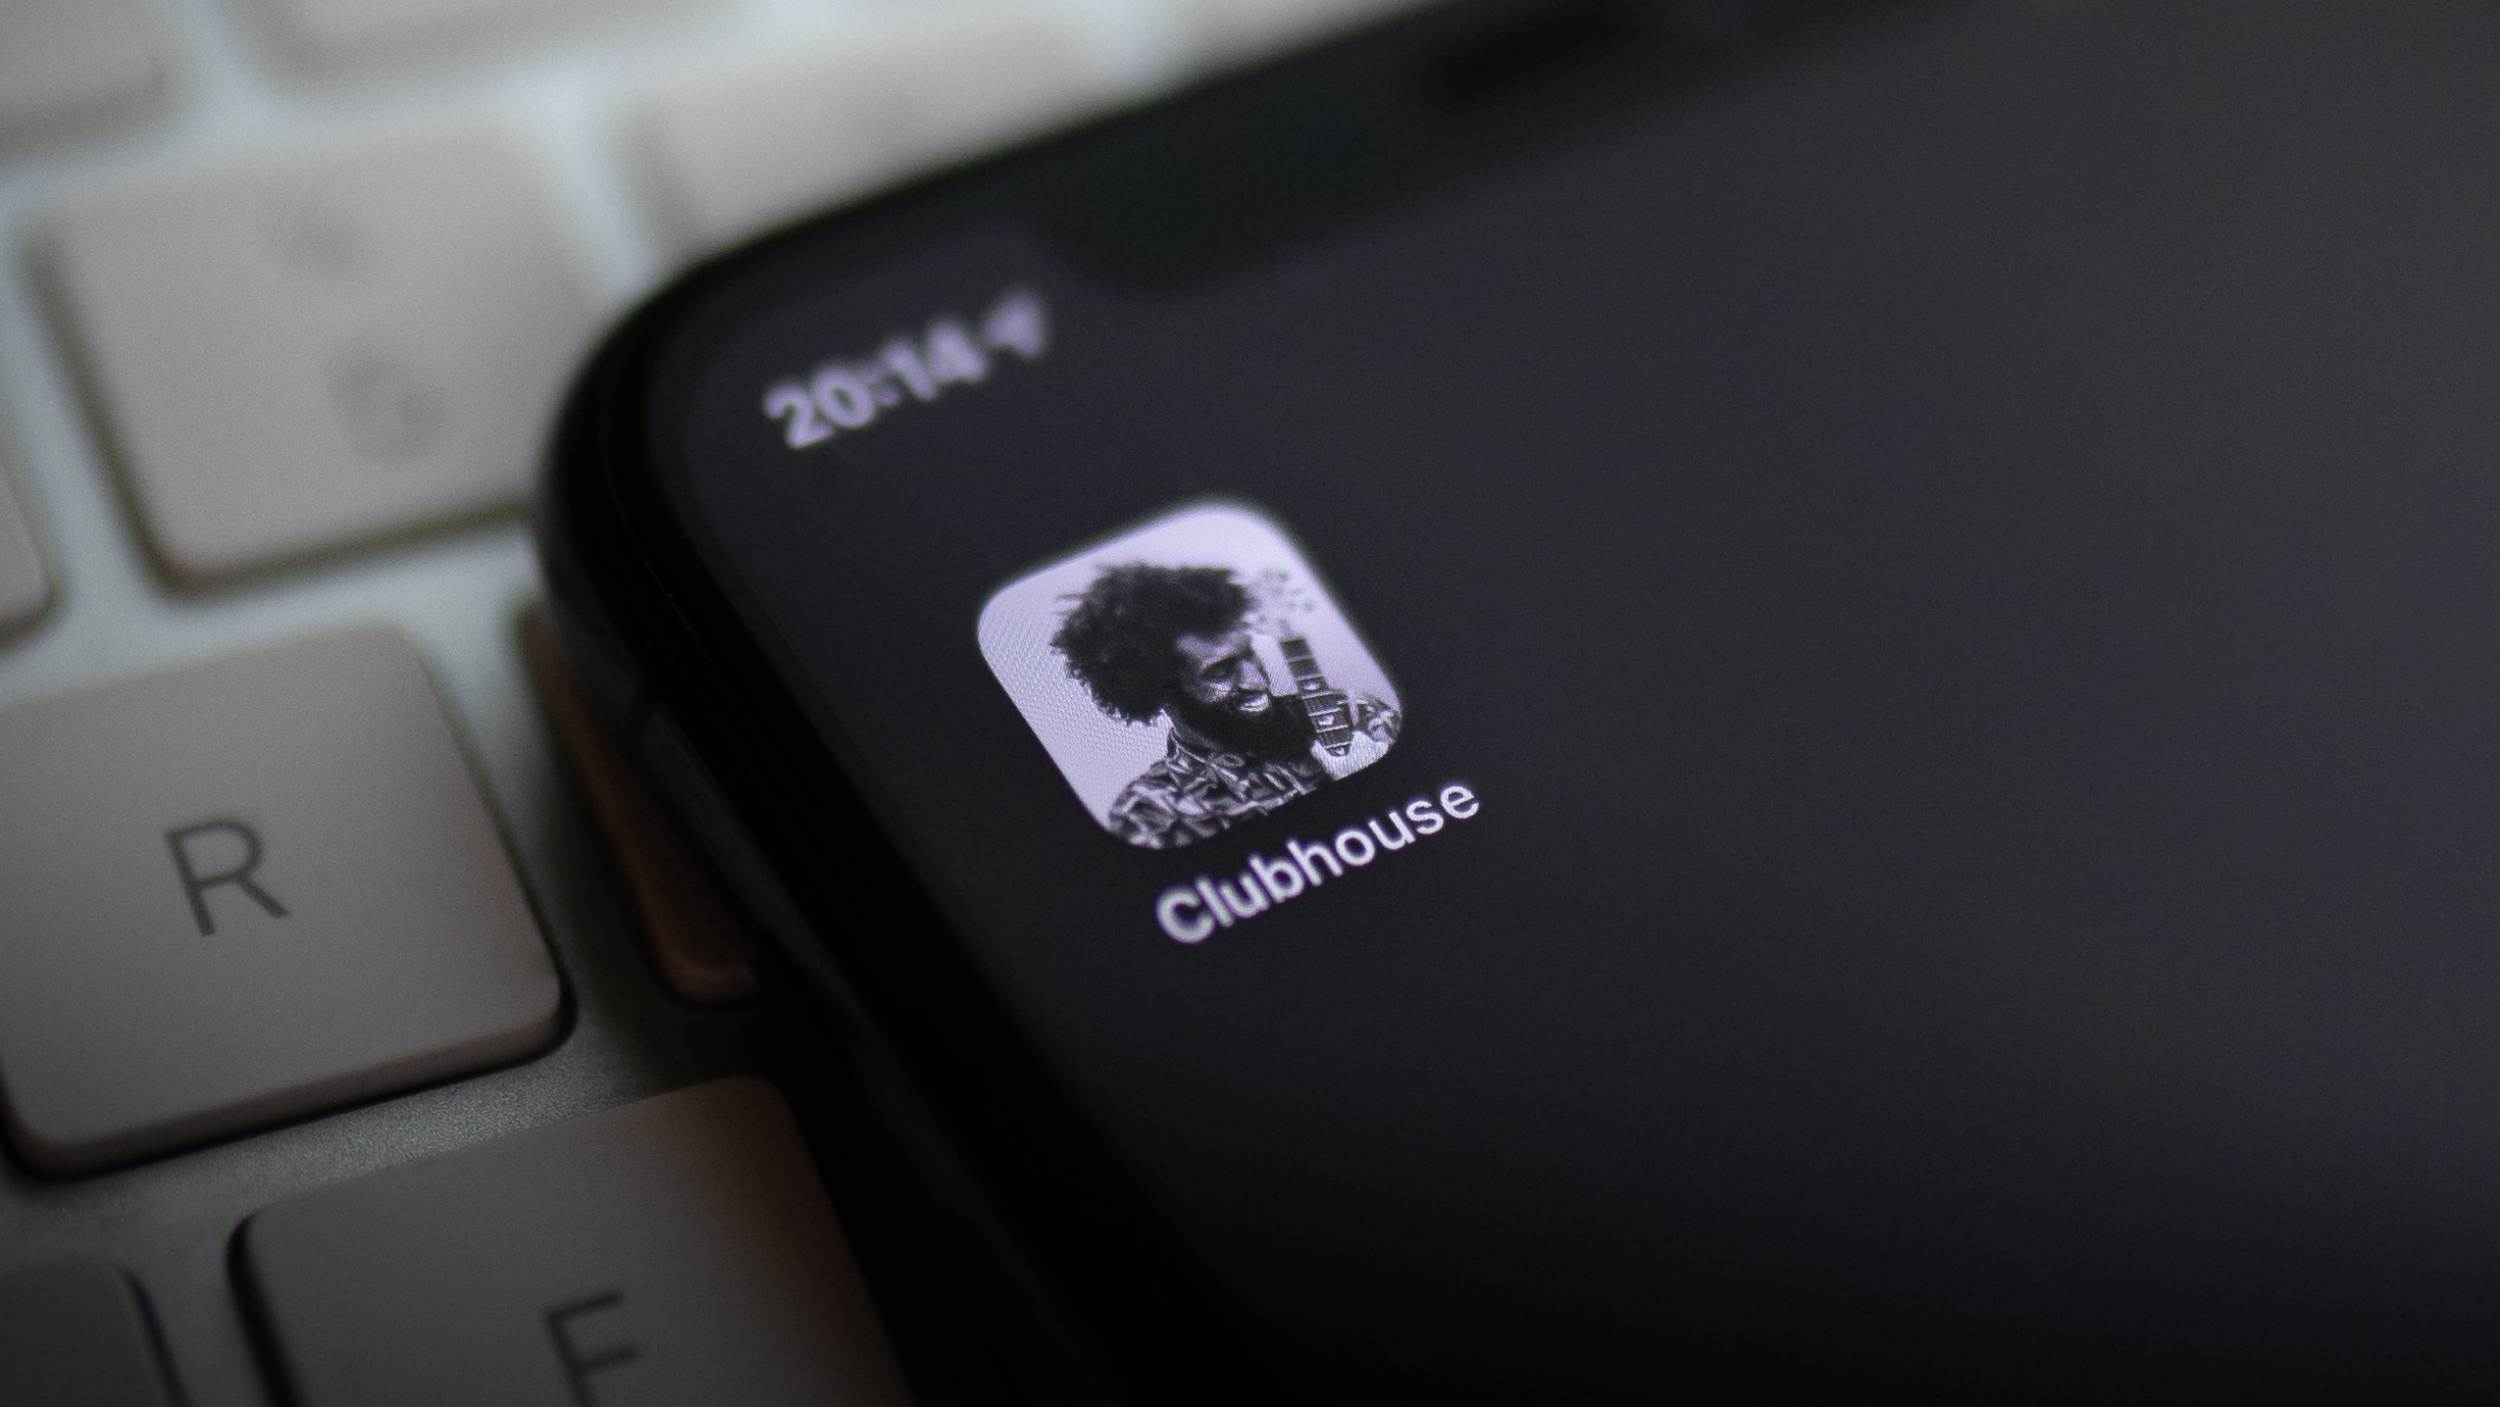 Clubhouse Akan Mengemaskini Aplikasi Mereka Dengan Ciri Keselamatan Baru